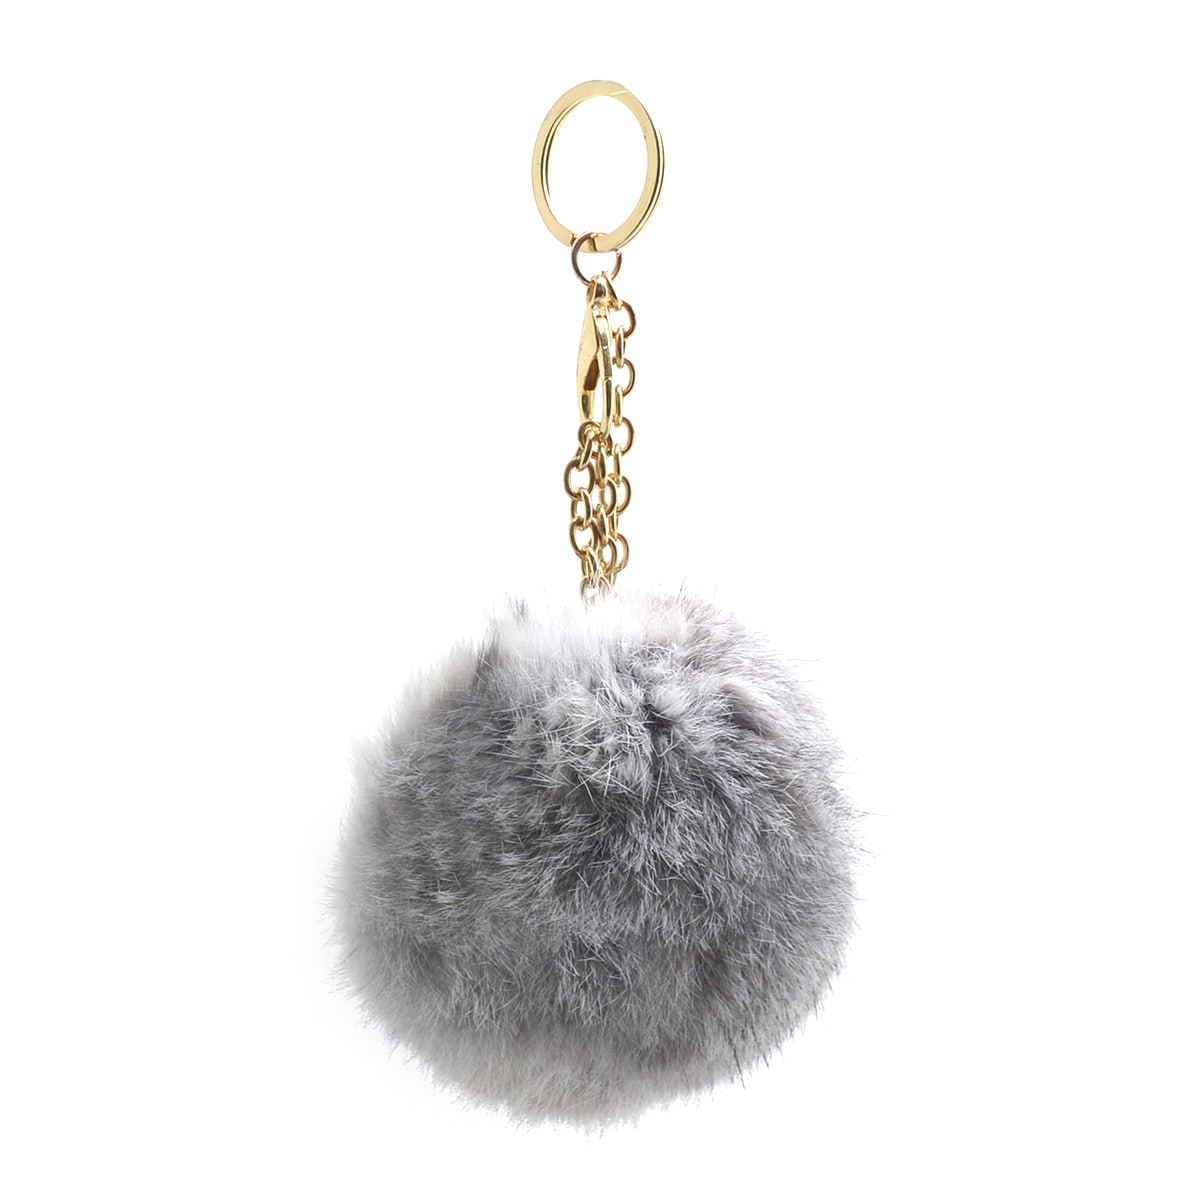 Dasein Fluffy Faux Fur Pom Pom Key Chain Handbag Purse Charm Grey Small, Extra L | eBay